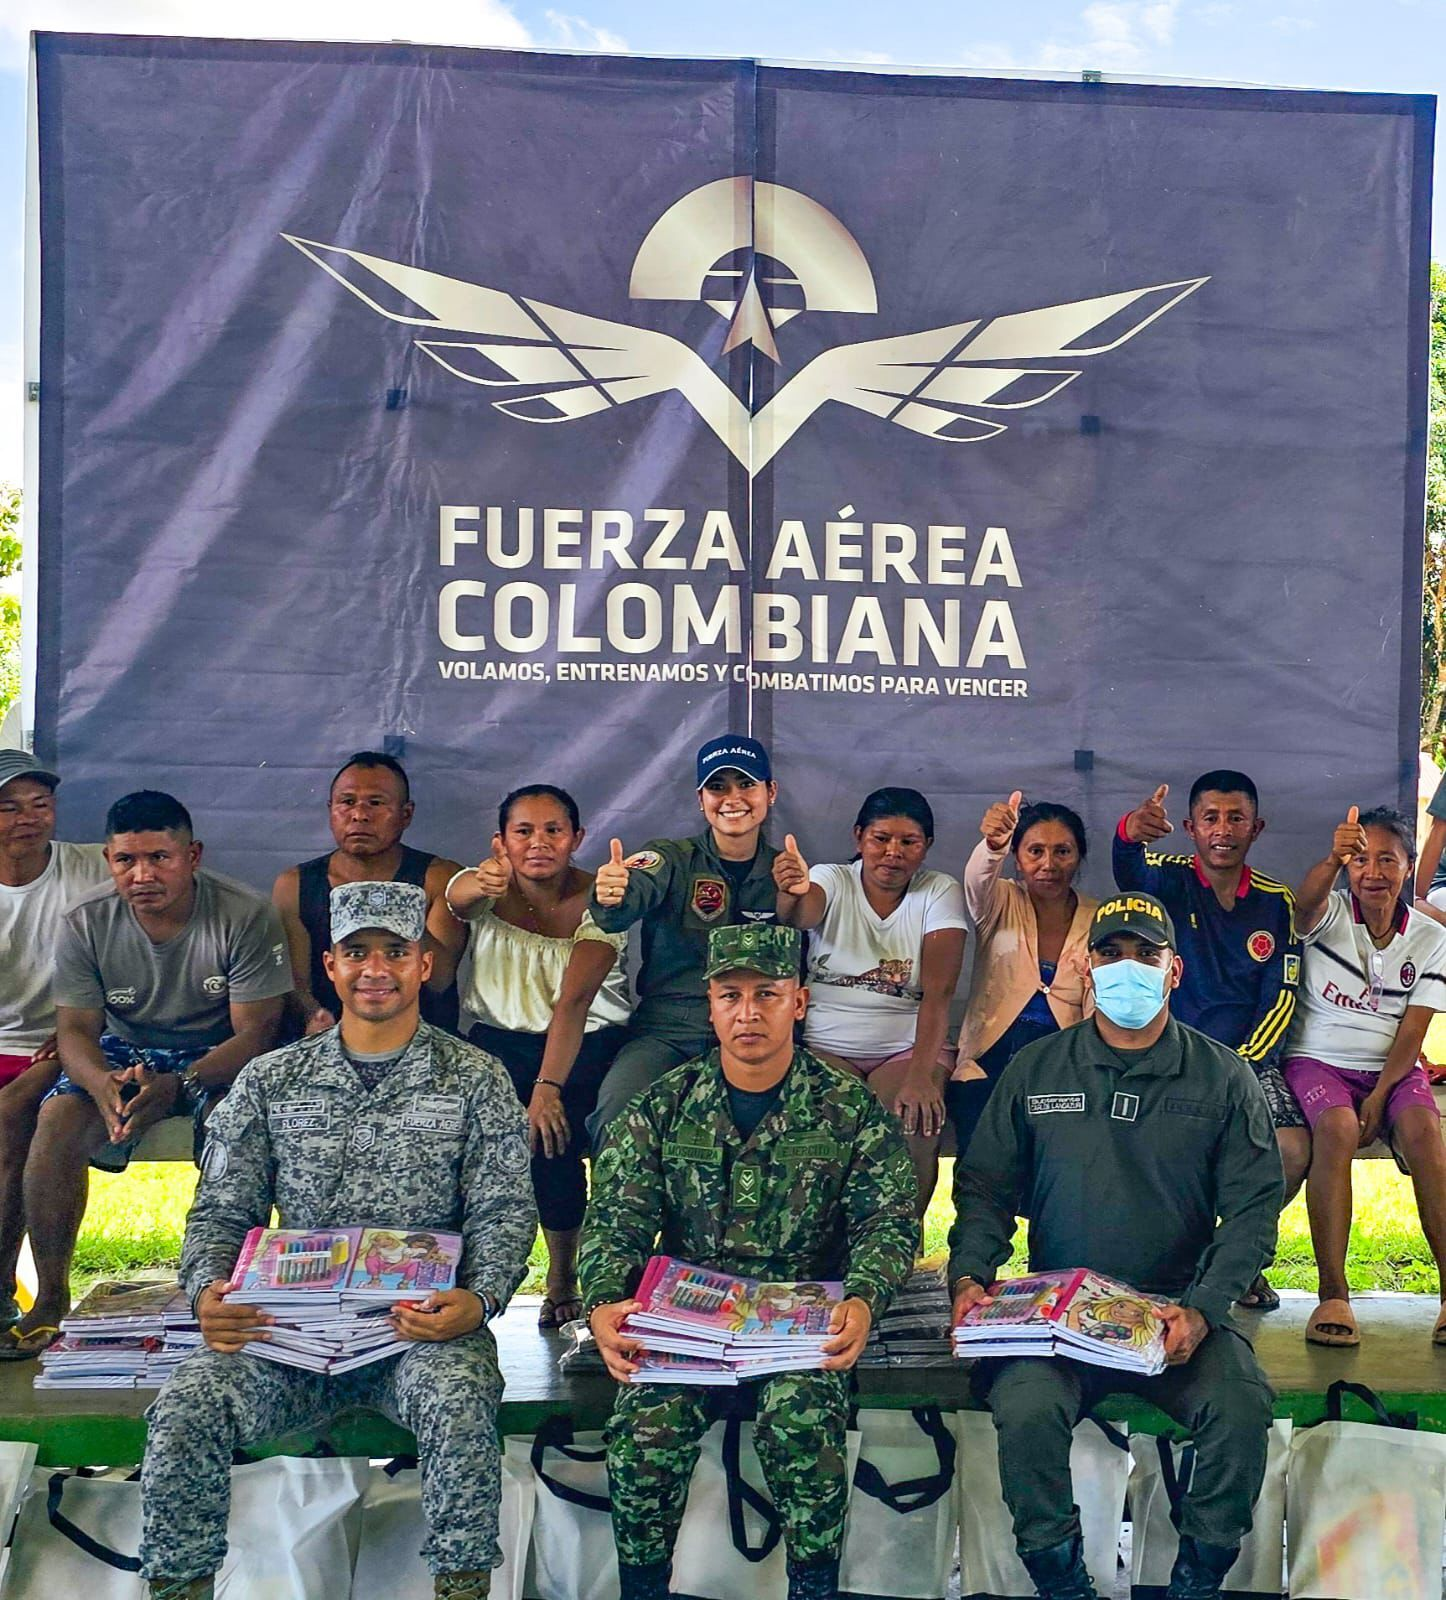 Entregan kits escolares y realizan charlas preventivas en resguardo indígena de Cumaribo